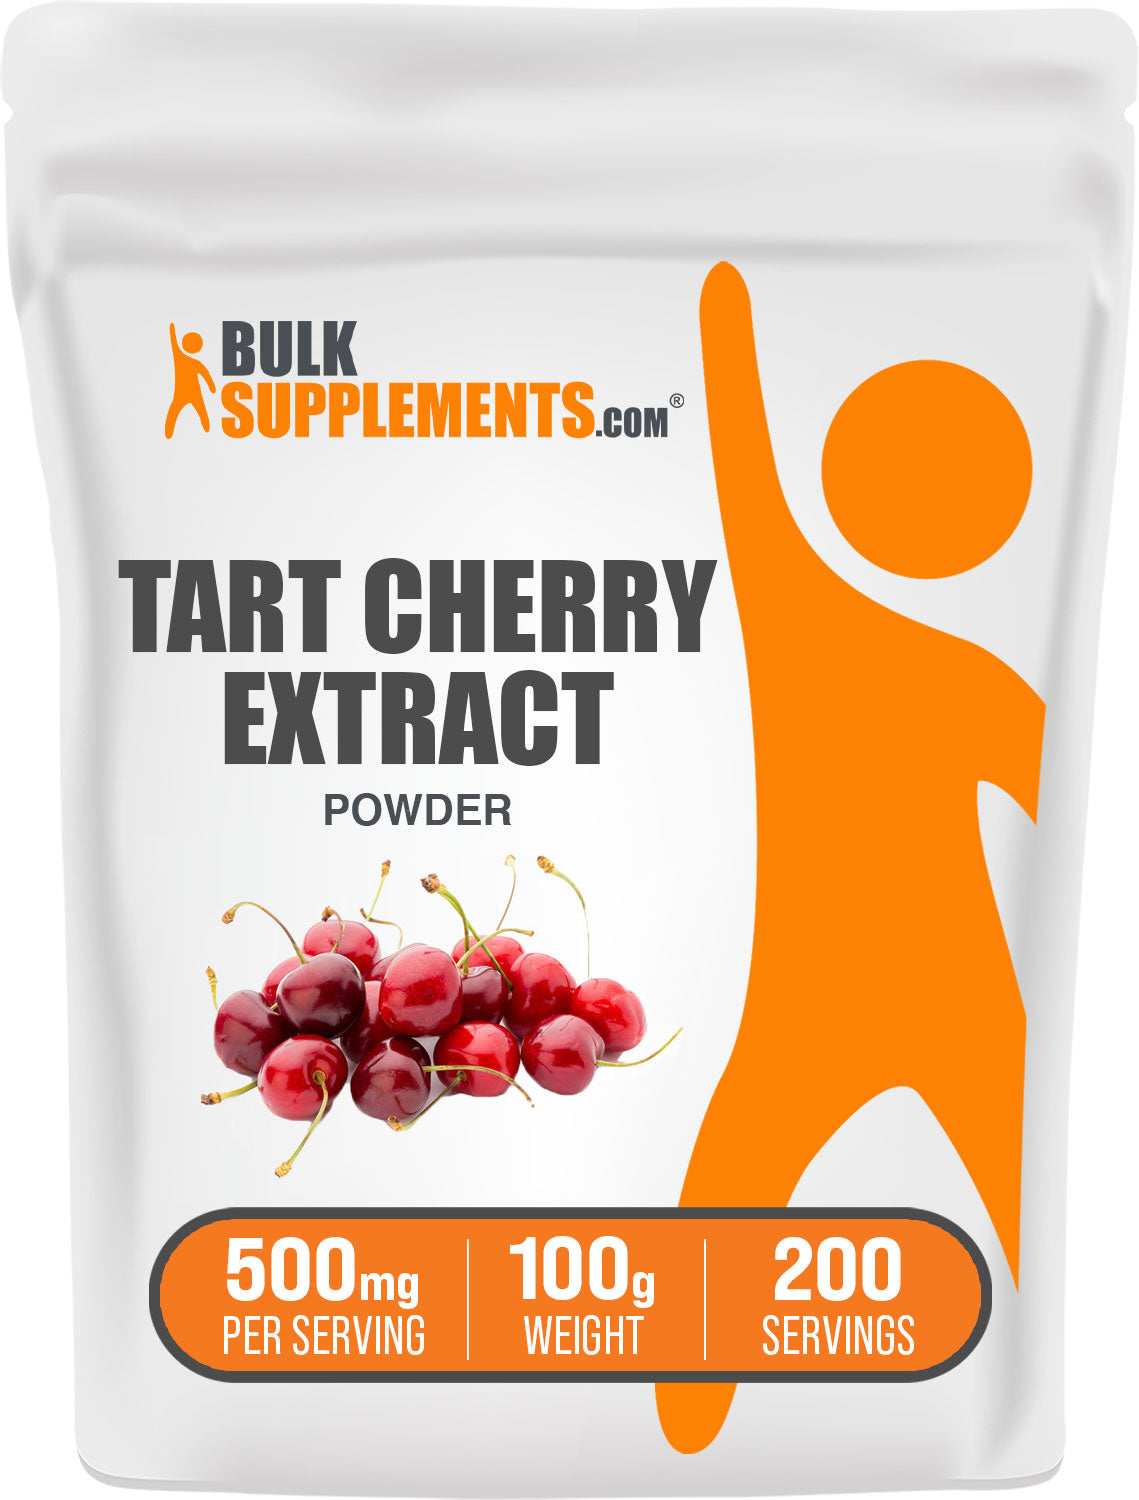 Tart Cherry Extract Powder 100g Bag